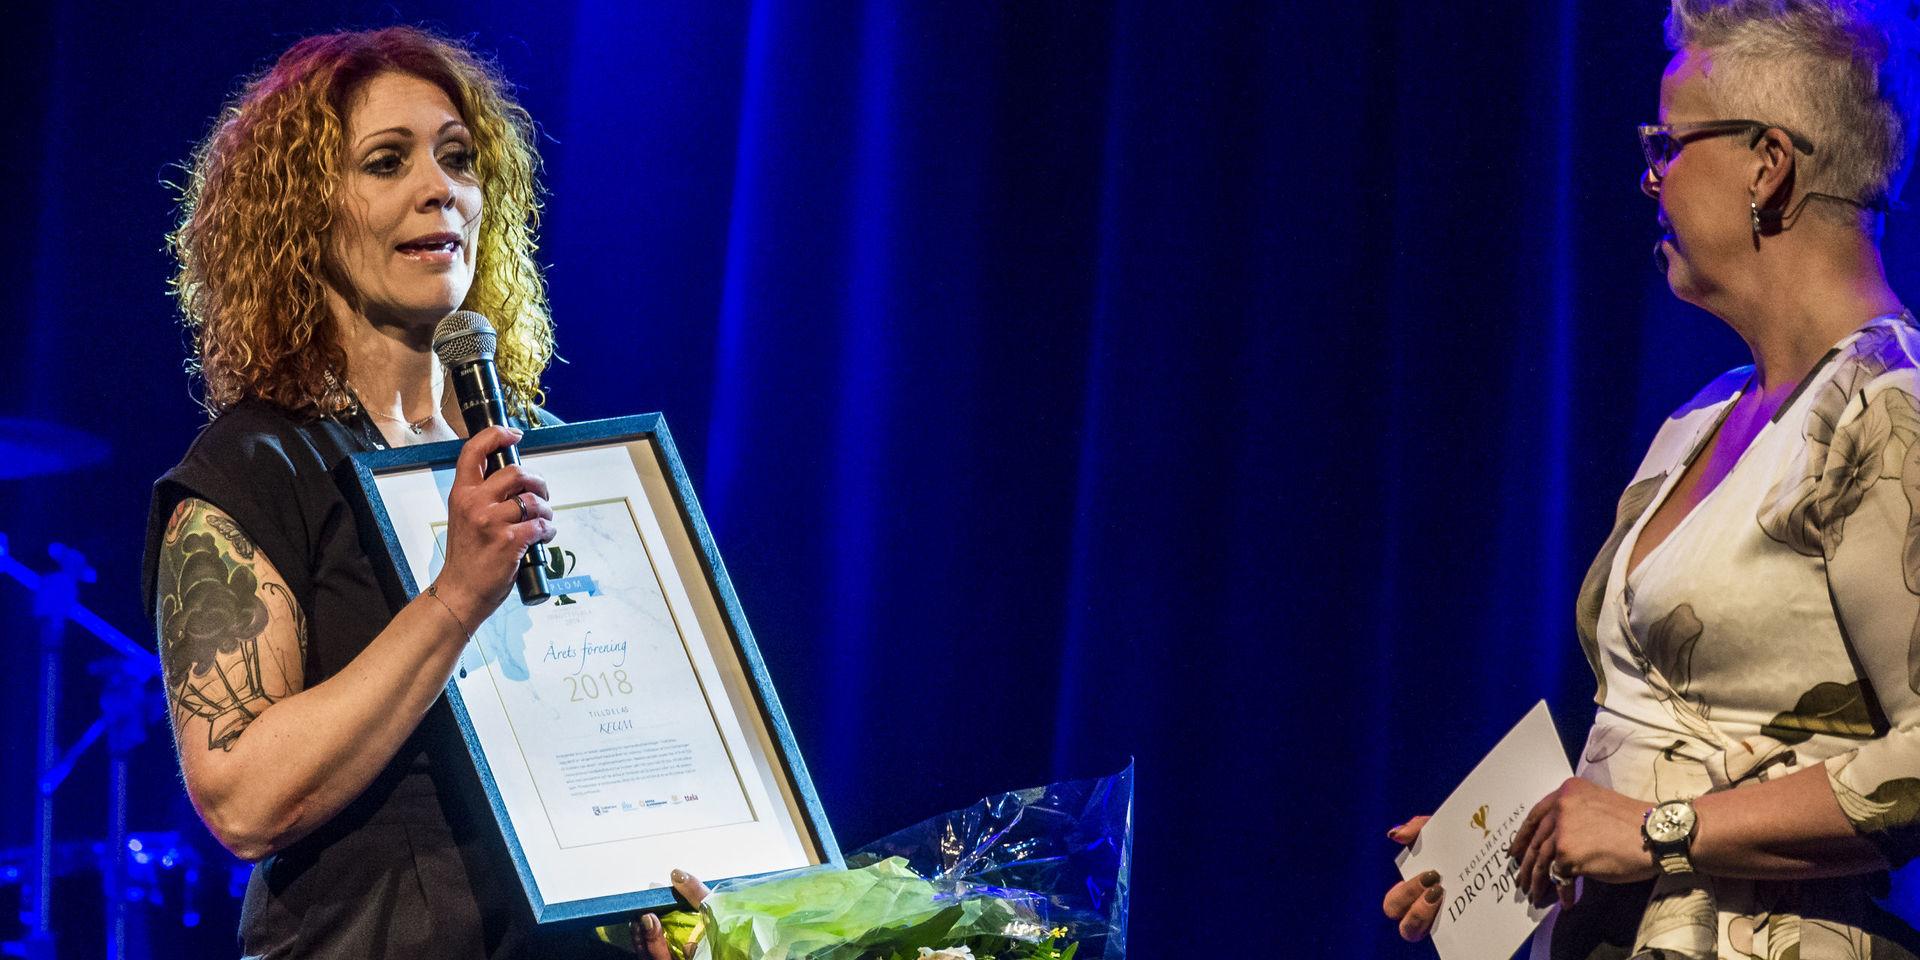 Årets förening 2018 blev KFUM Trollhättan. På plats för att ta emot priset var föreningens ordförande Rebecca Möller. 